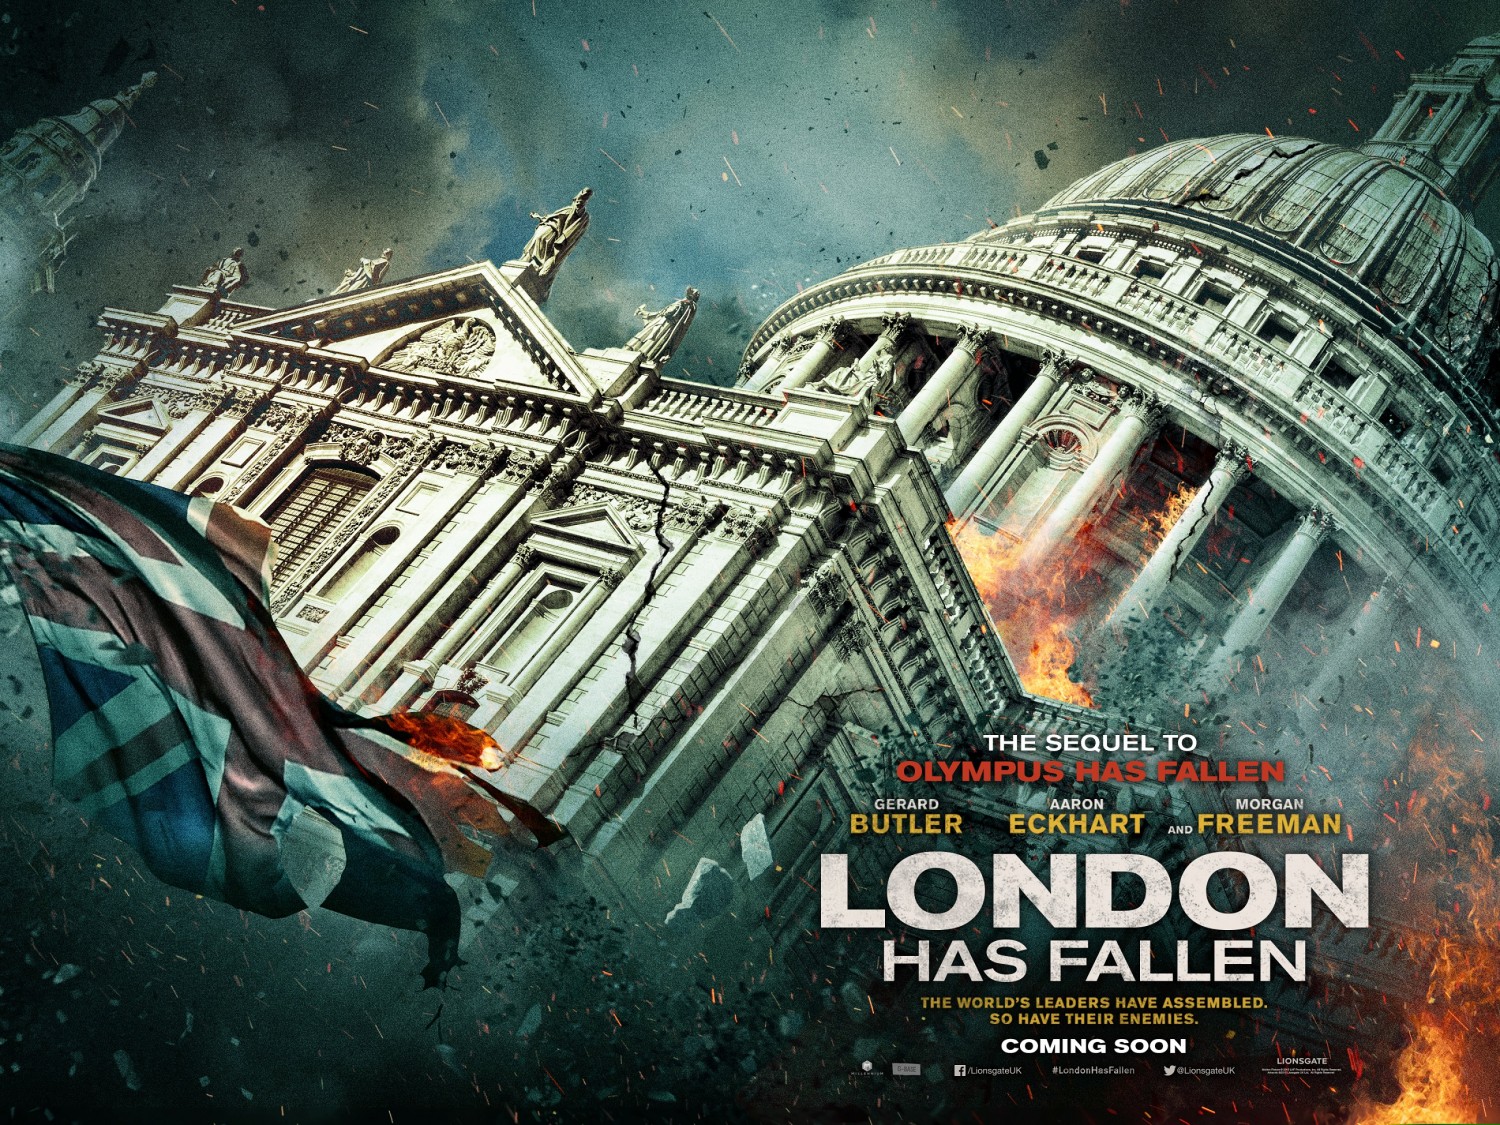 HQ London Has Fallen Wallpapers | File 725.81Kb